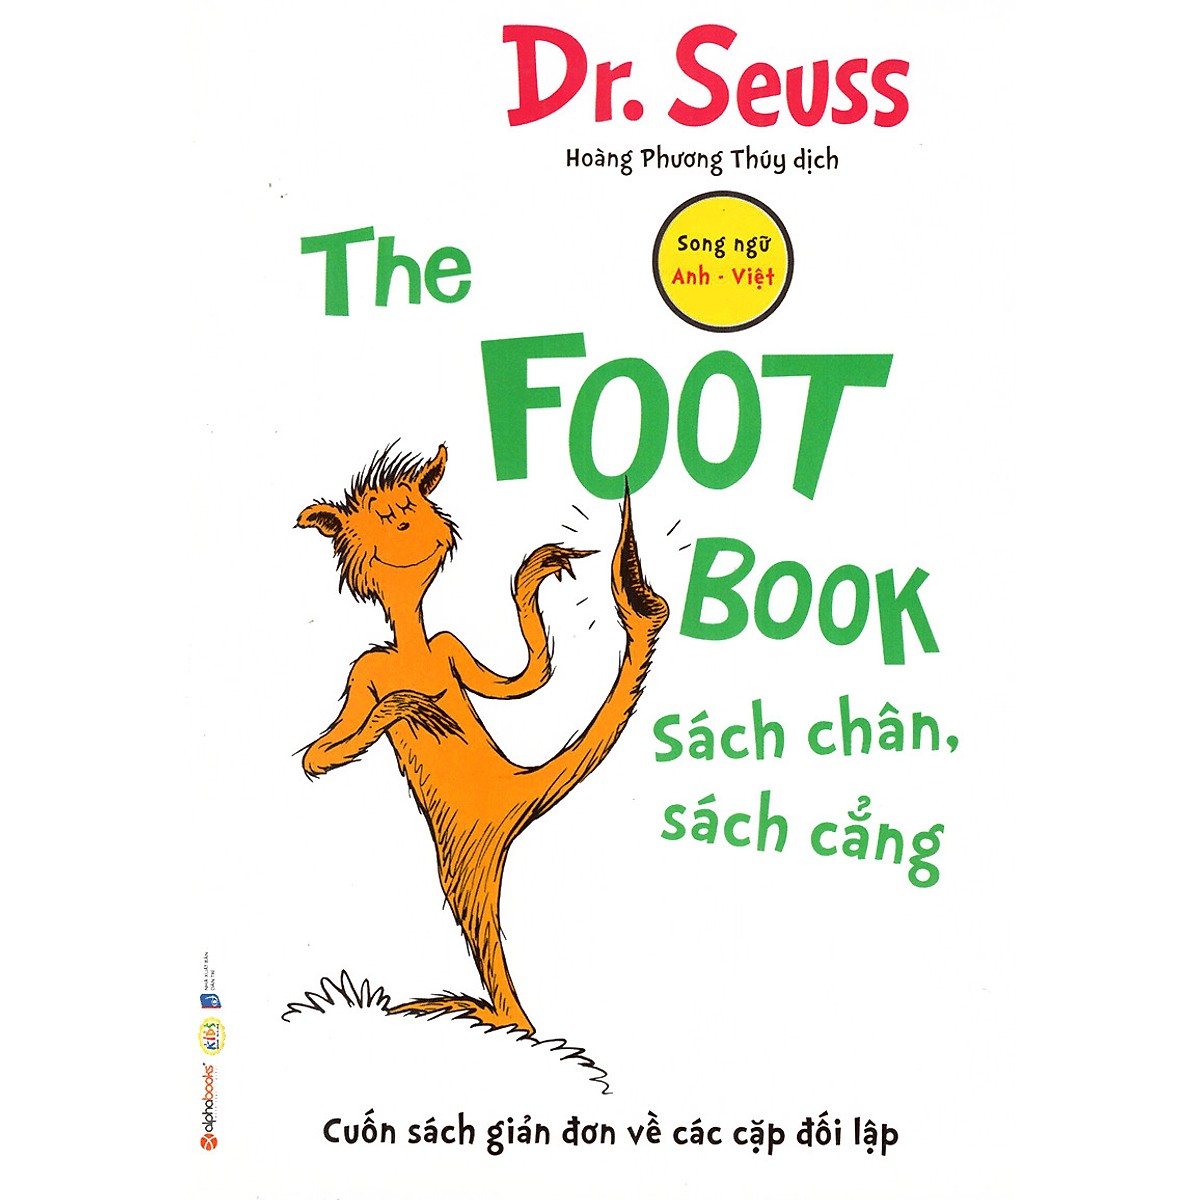 Bộ 8 Cuốn Sách Song Ngữ Dr. Seuss Kinh Điển Giúp Trẻ Học Tiếng Anh  ( Quà Tặng: Cây Viết Kute' )